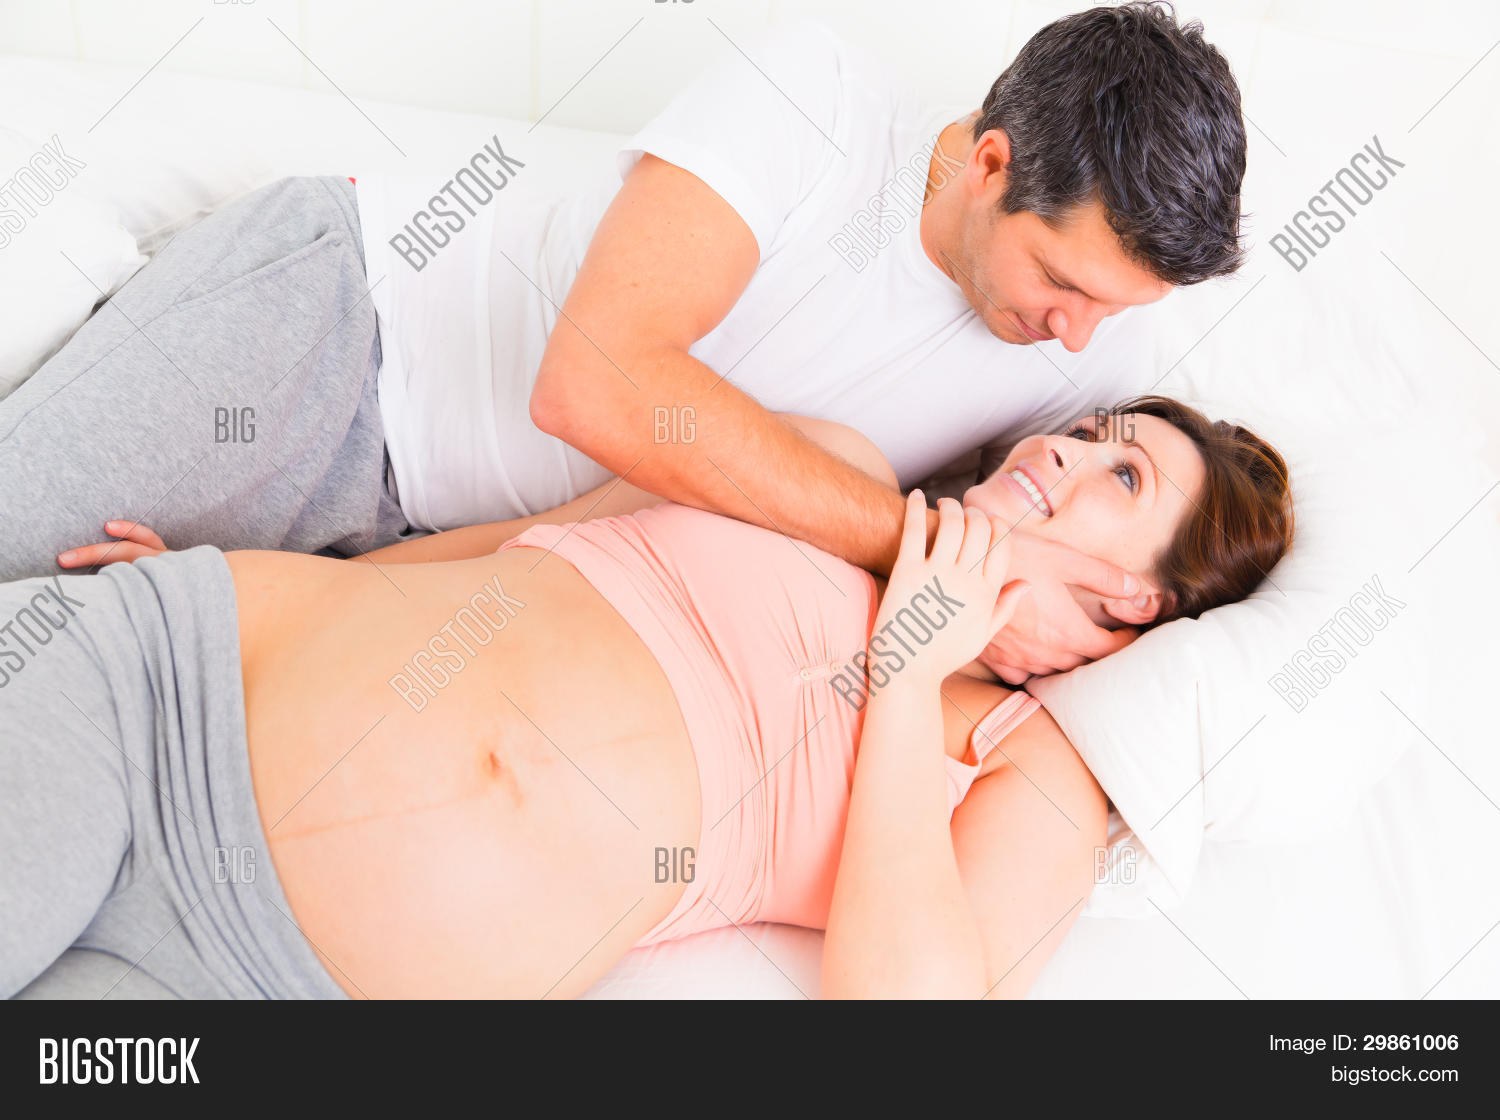 оргазм при беременности первый триместр можно или нет фото 91